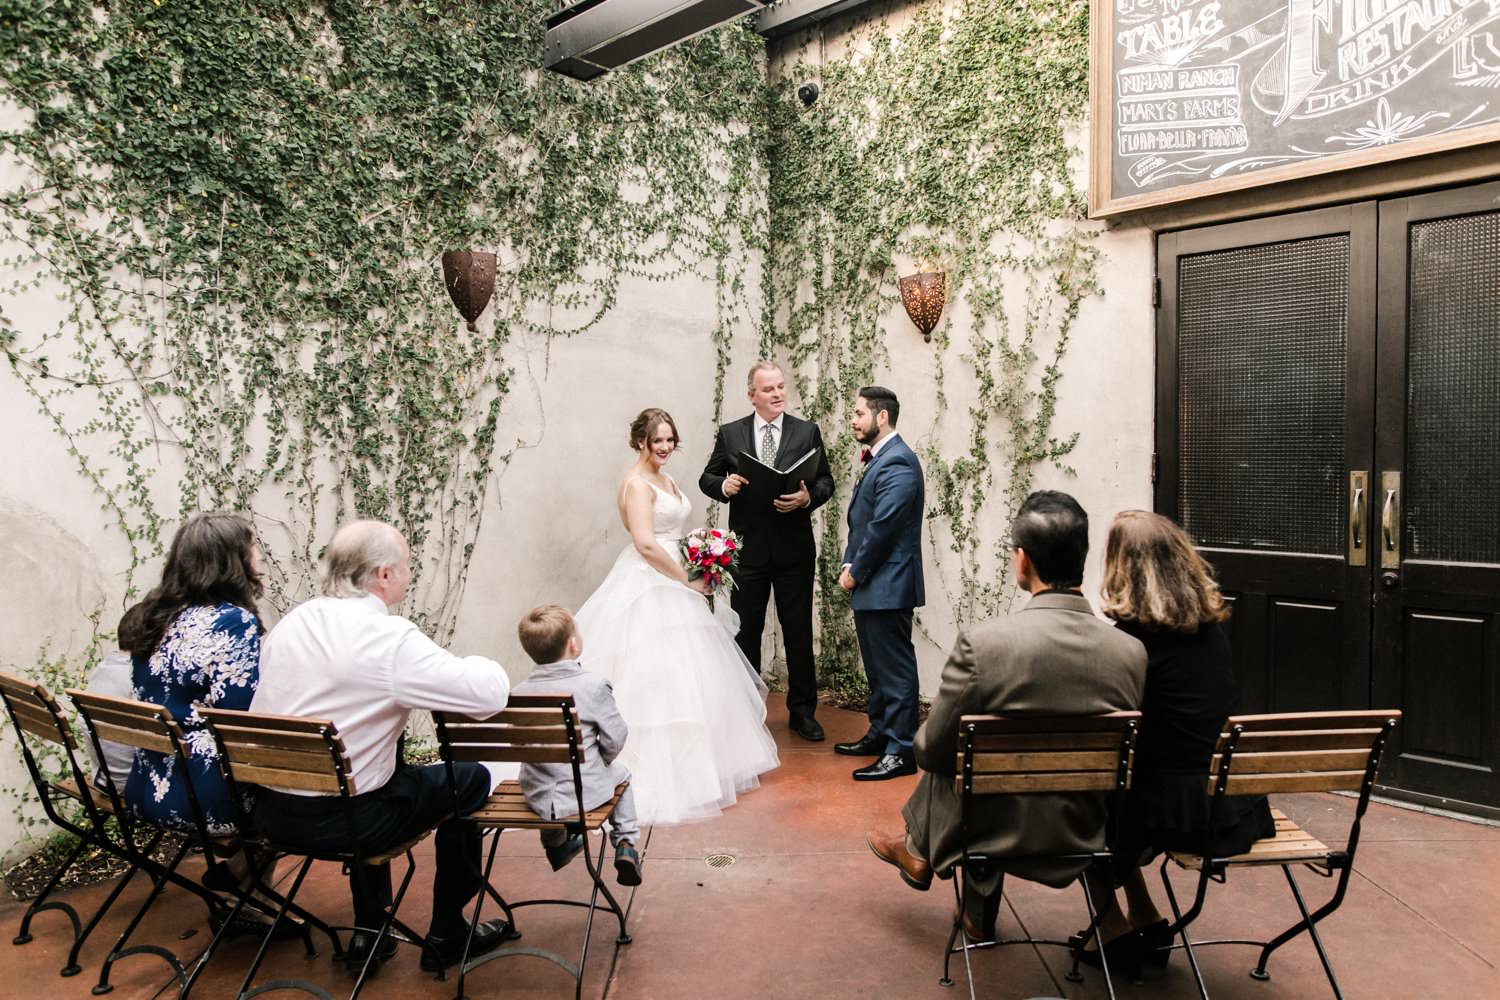 Los Angeles elopement ceremony photographer